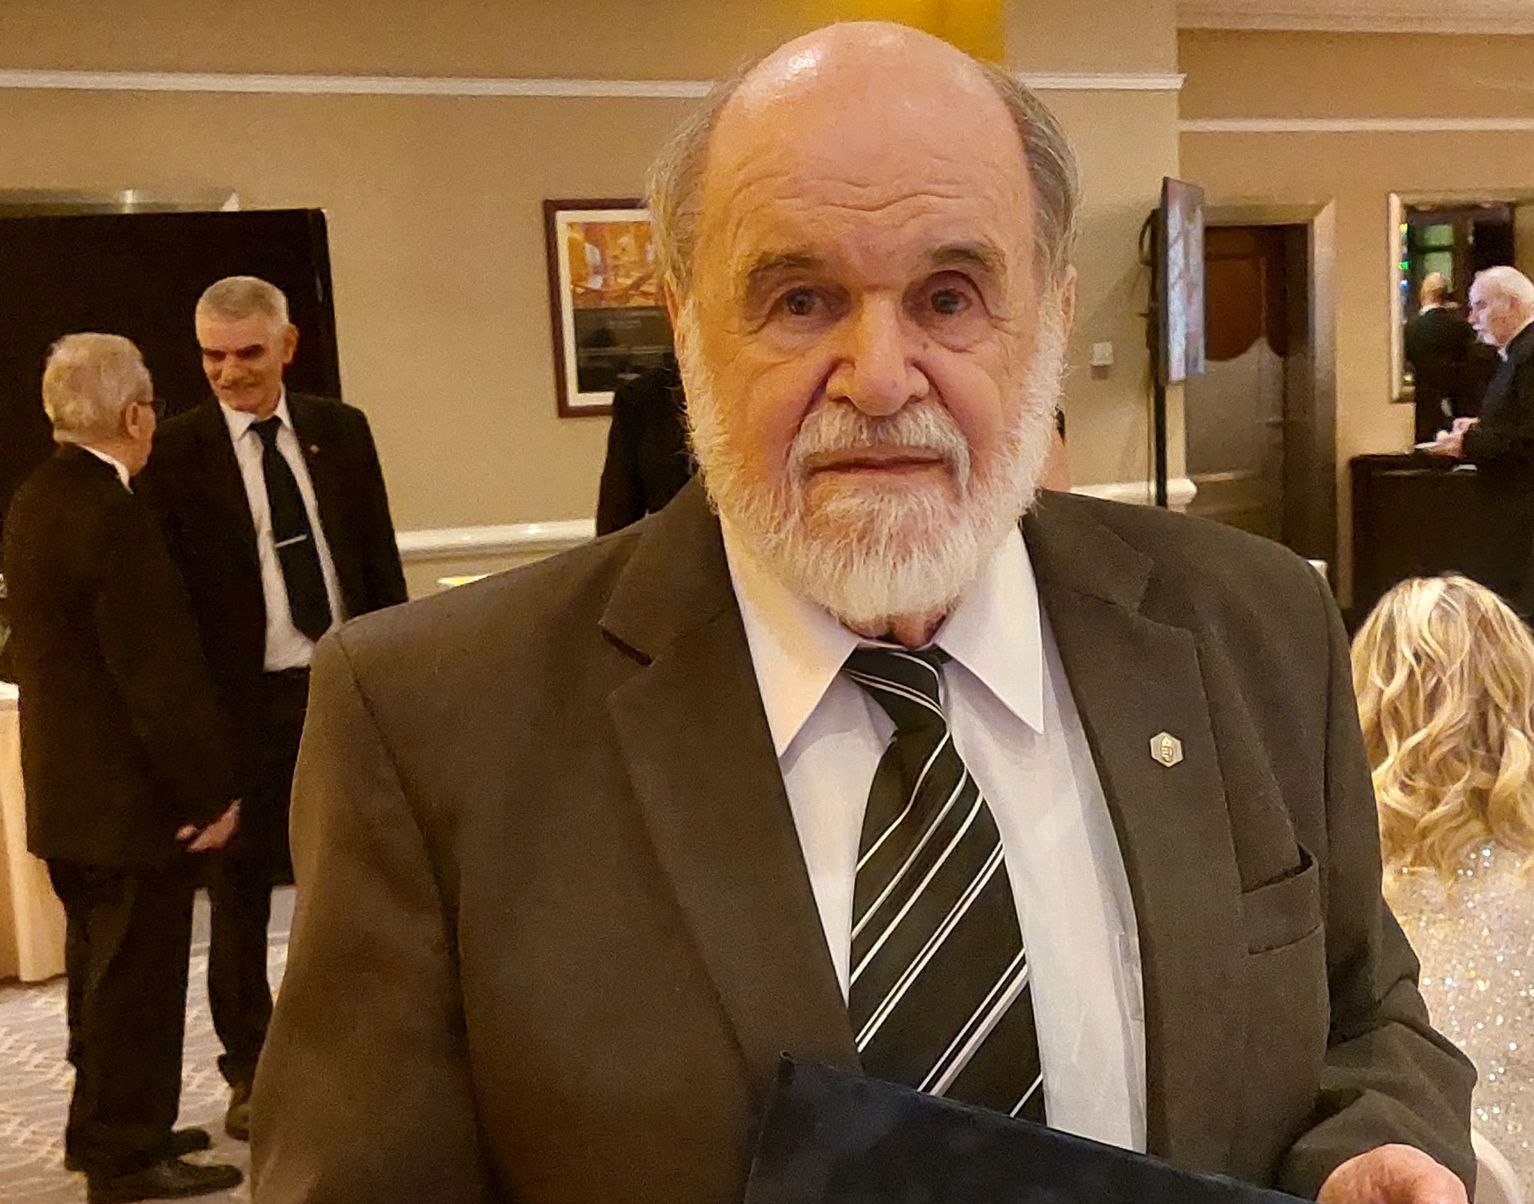 Az Év Mérnöke Jubileumi Aranygyűrű díjat vehetett át Dr. Szepes András